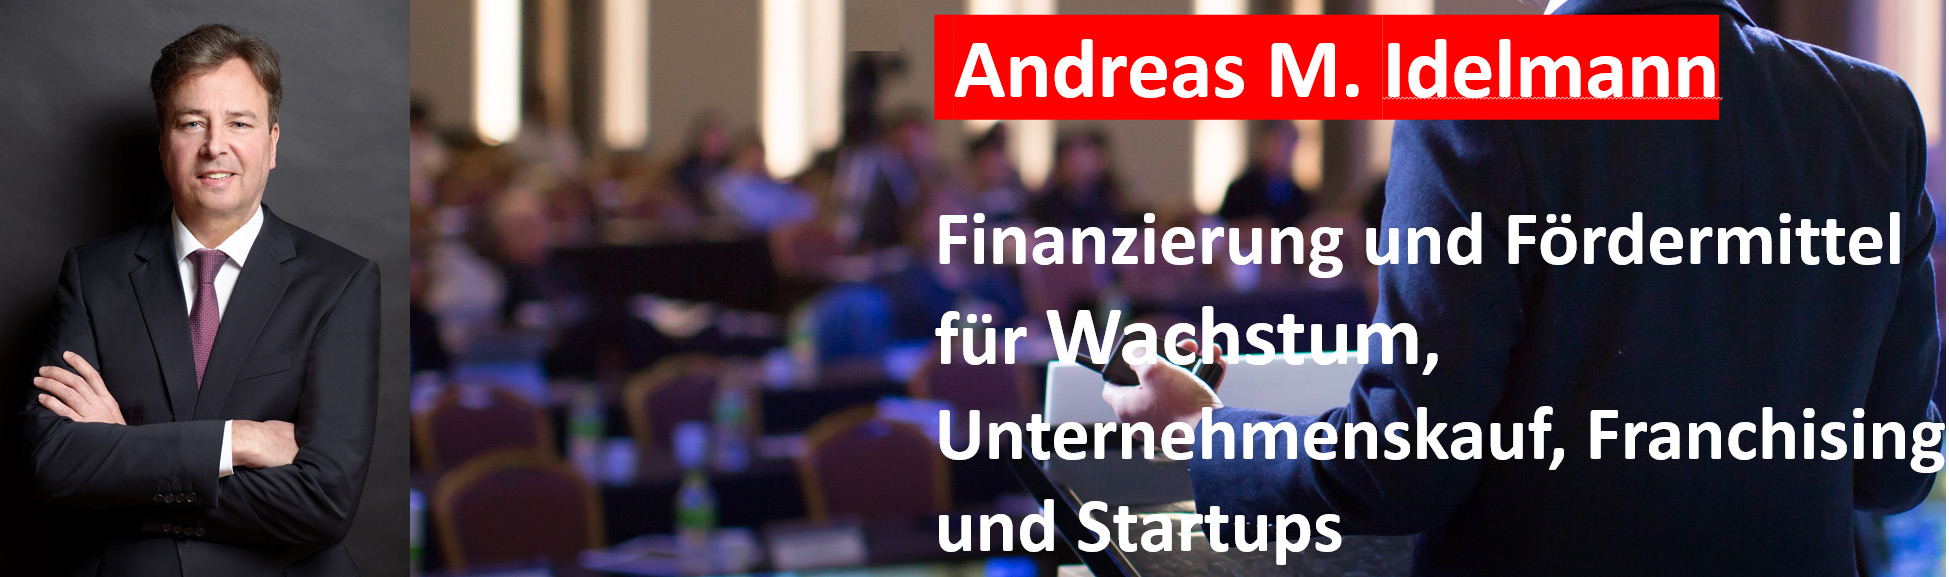 Andreas M. Idelmann - Finanzierung und Fördermittel für Wachstum, Unternehmenskauf, Franchising und Startups